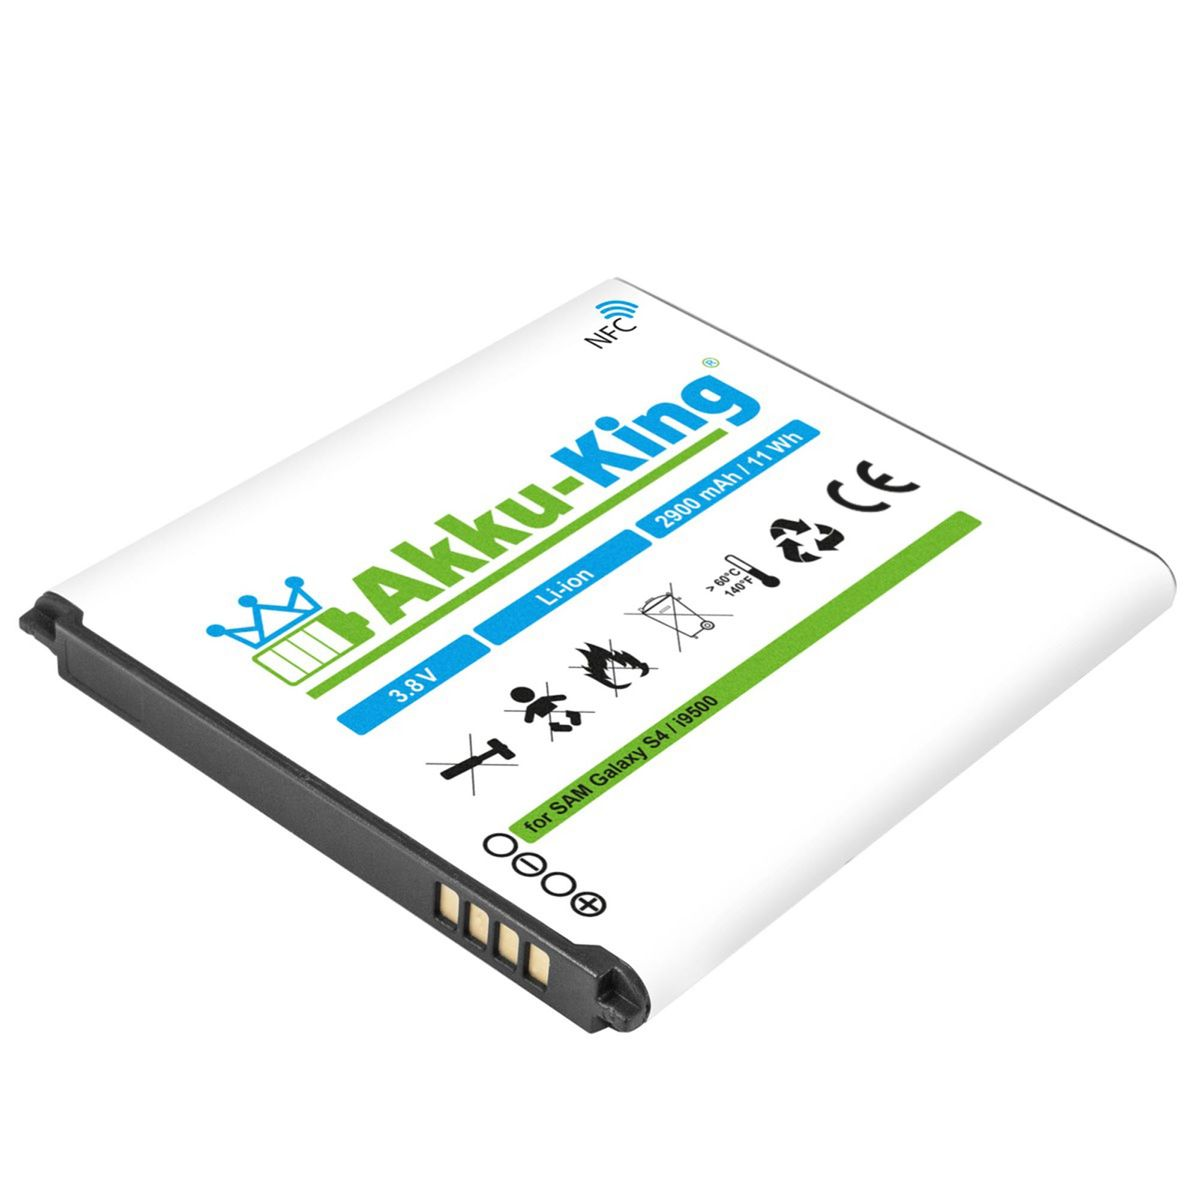 NFC kompatibel Li-Ion mit Akku EB-B600BE Samsung Volt, 3.8 AKKU-KING Handy-Akku, 2900mAh